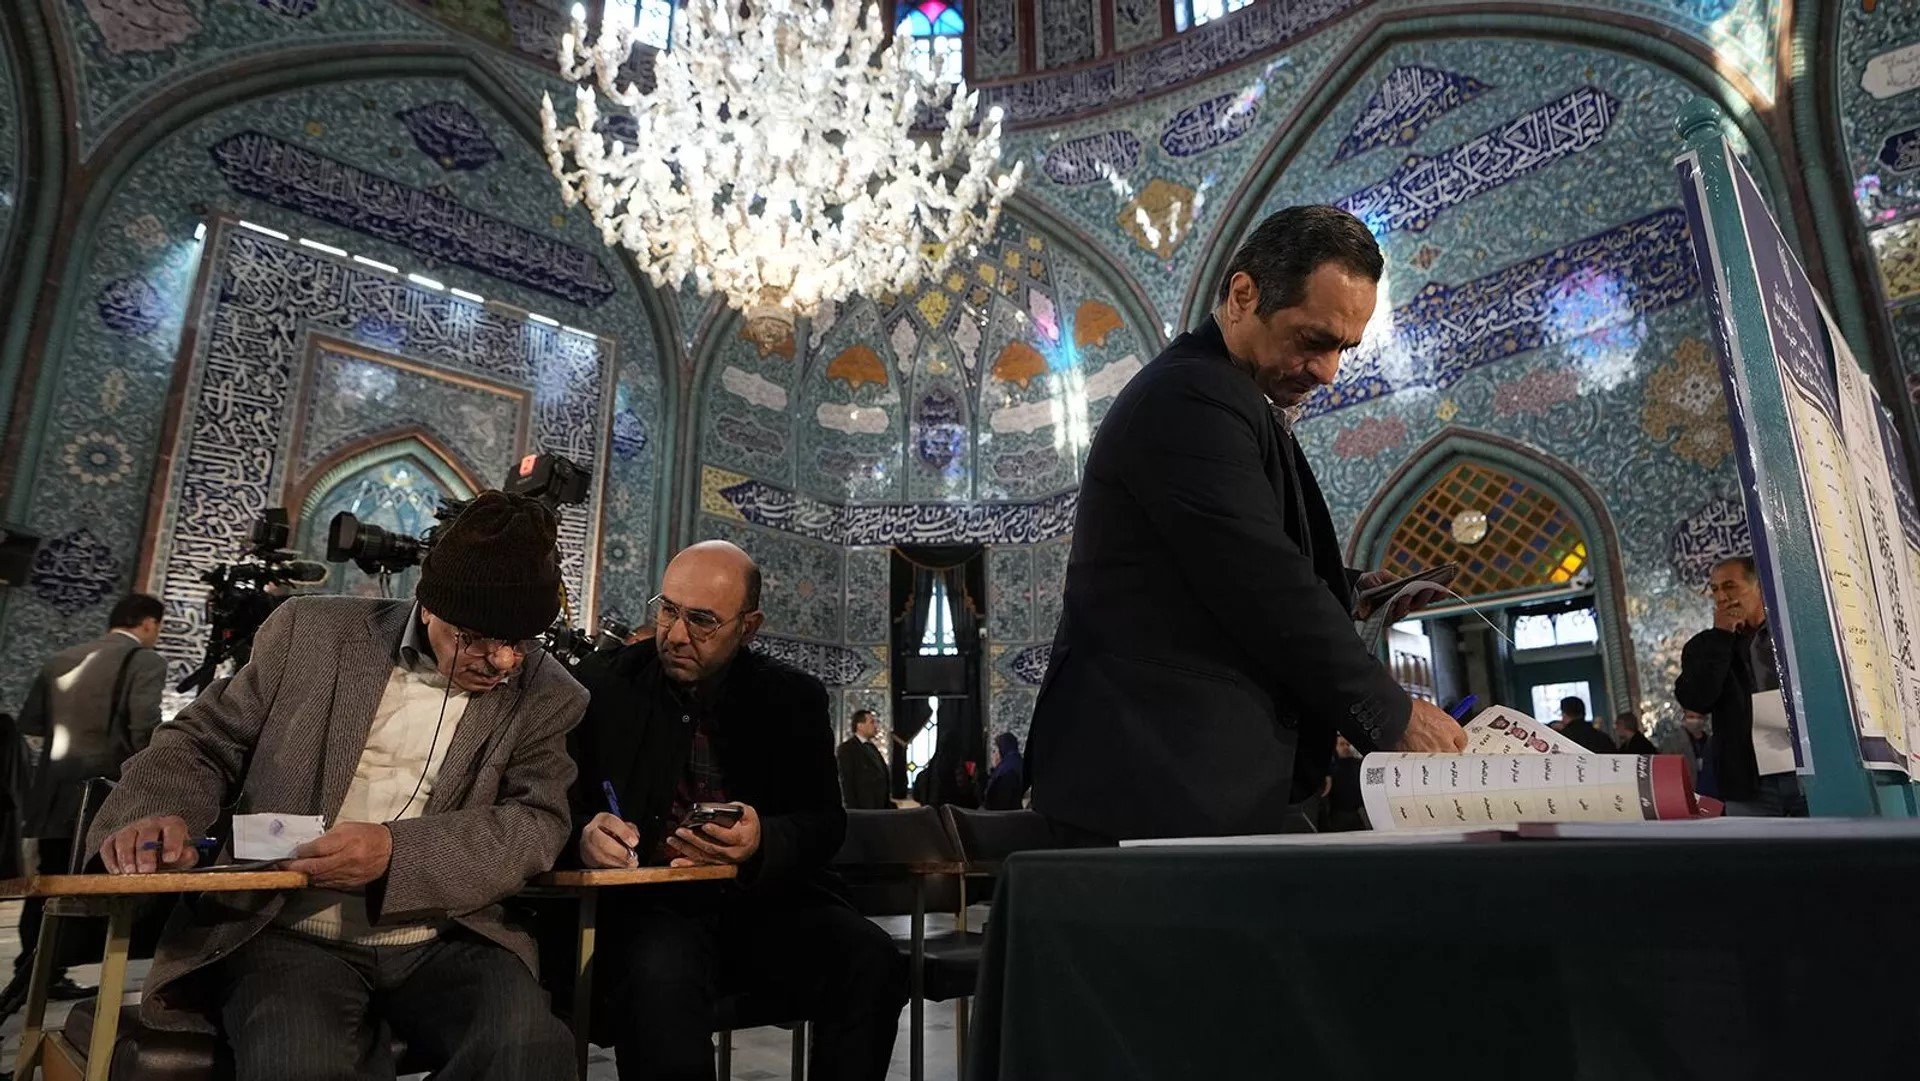 Իրանի Մեջլիսի նախագահը վերընտրվել է՝ հավաքելով ավելի քան 447 հազար ձայն